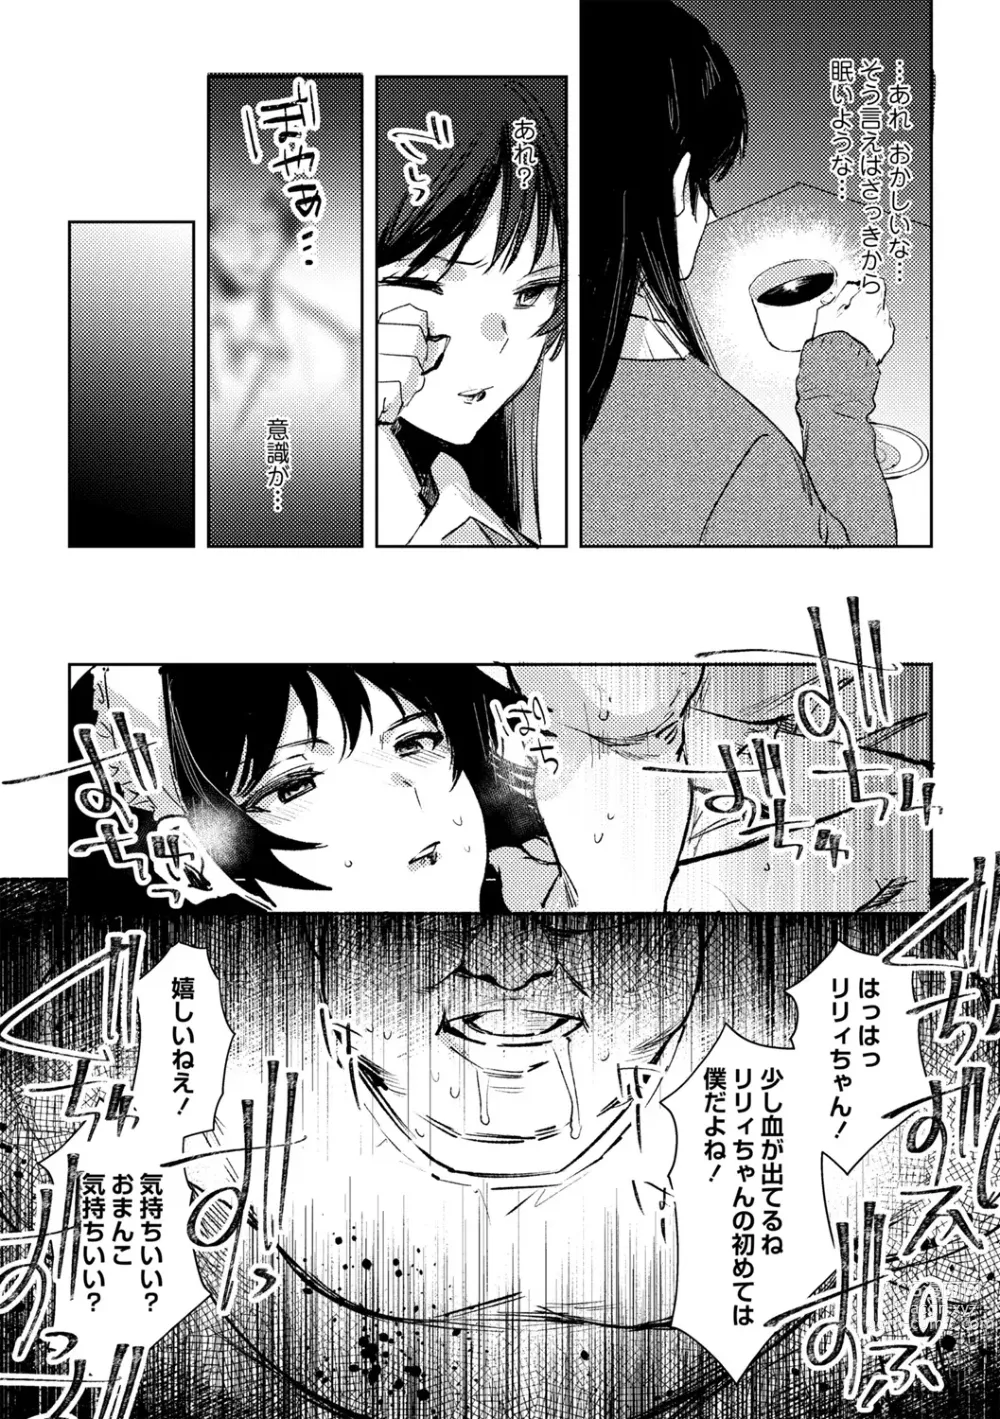 Page 3 of manga Yuuhei  KodoOji no Tou